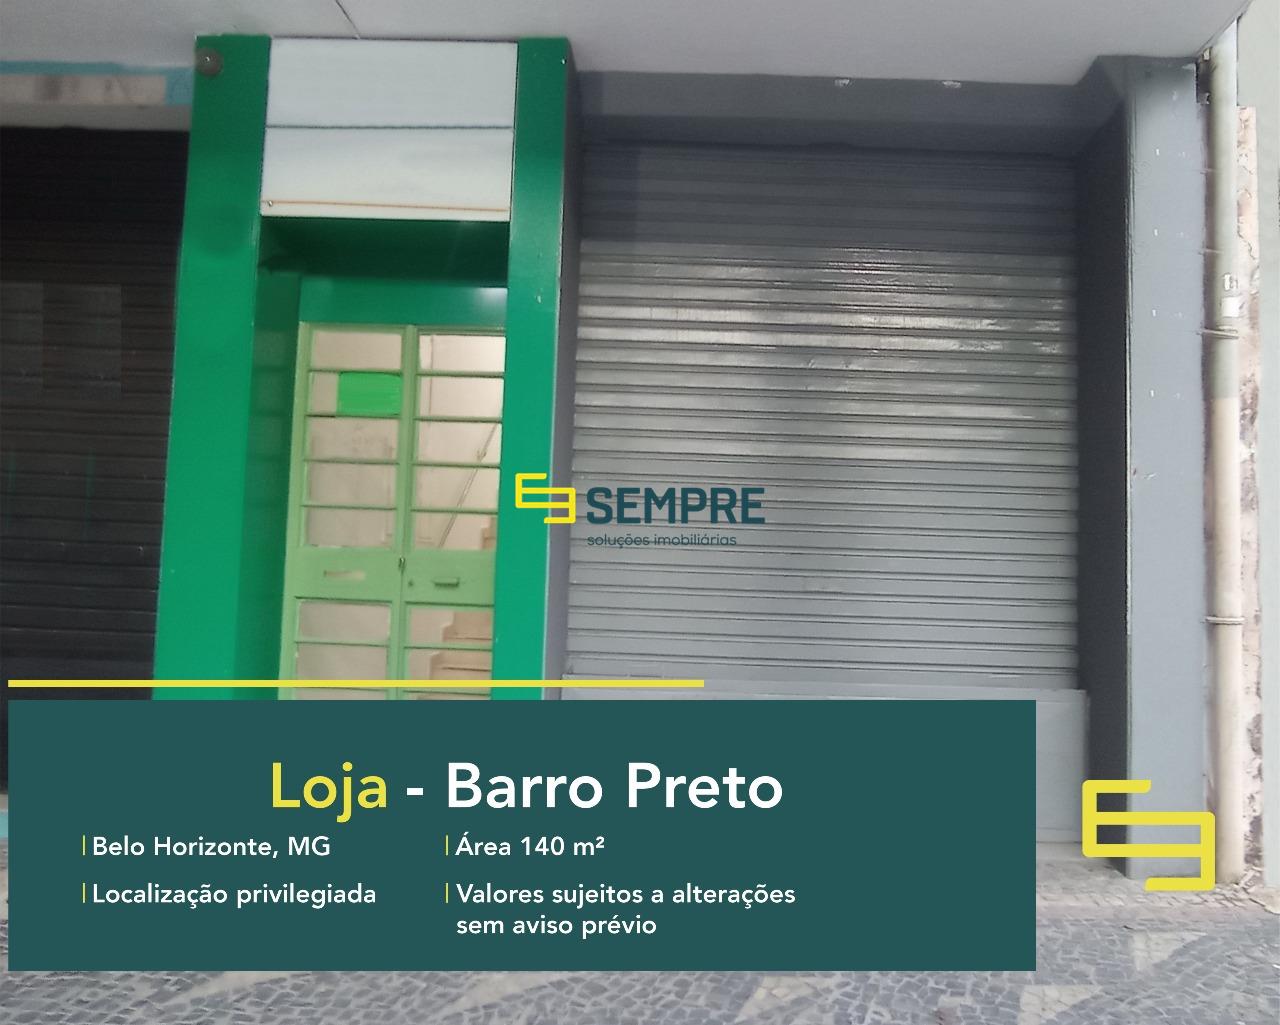 Loja para venda no Barro Preto em Belo Horizonte. Ponto comercial para venda conta, sobretudo, com área de 140 m².